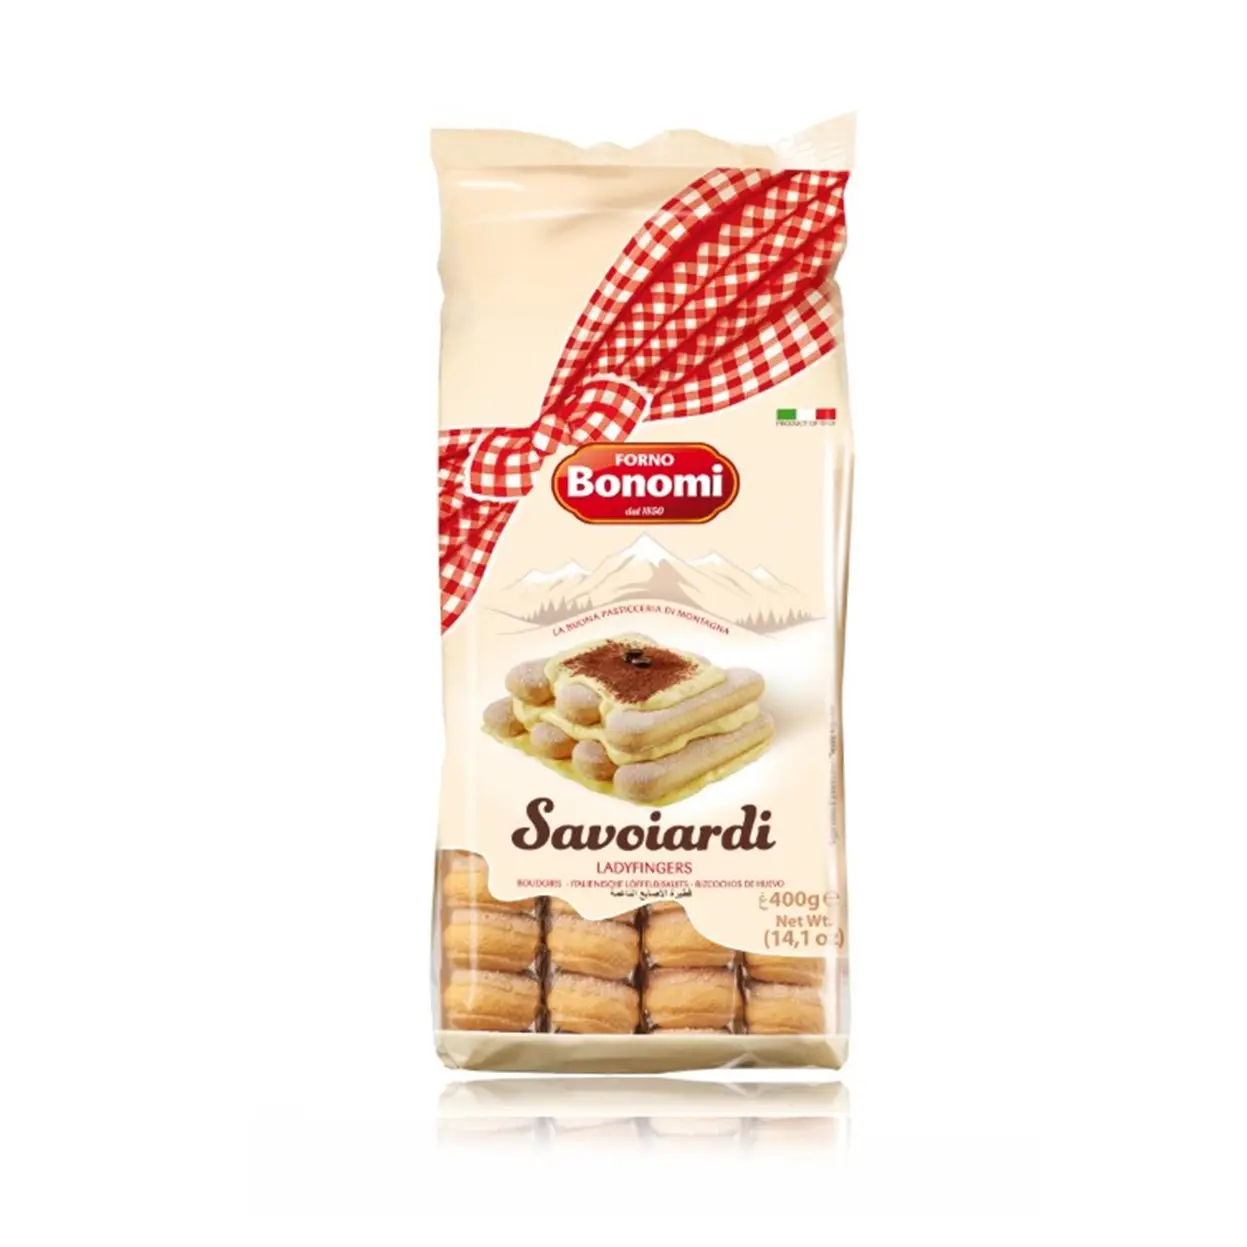 Печенье для тирамису купить. Печенье савоярди 400 г. Bonomi. Печенье cавоярди "forno Bonomi" (400 гр). Печенье сахарное forno Bonomi савоярди 200г. Печенье "forno Bonomi" сахарное савоярди 400гр.